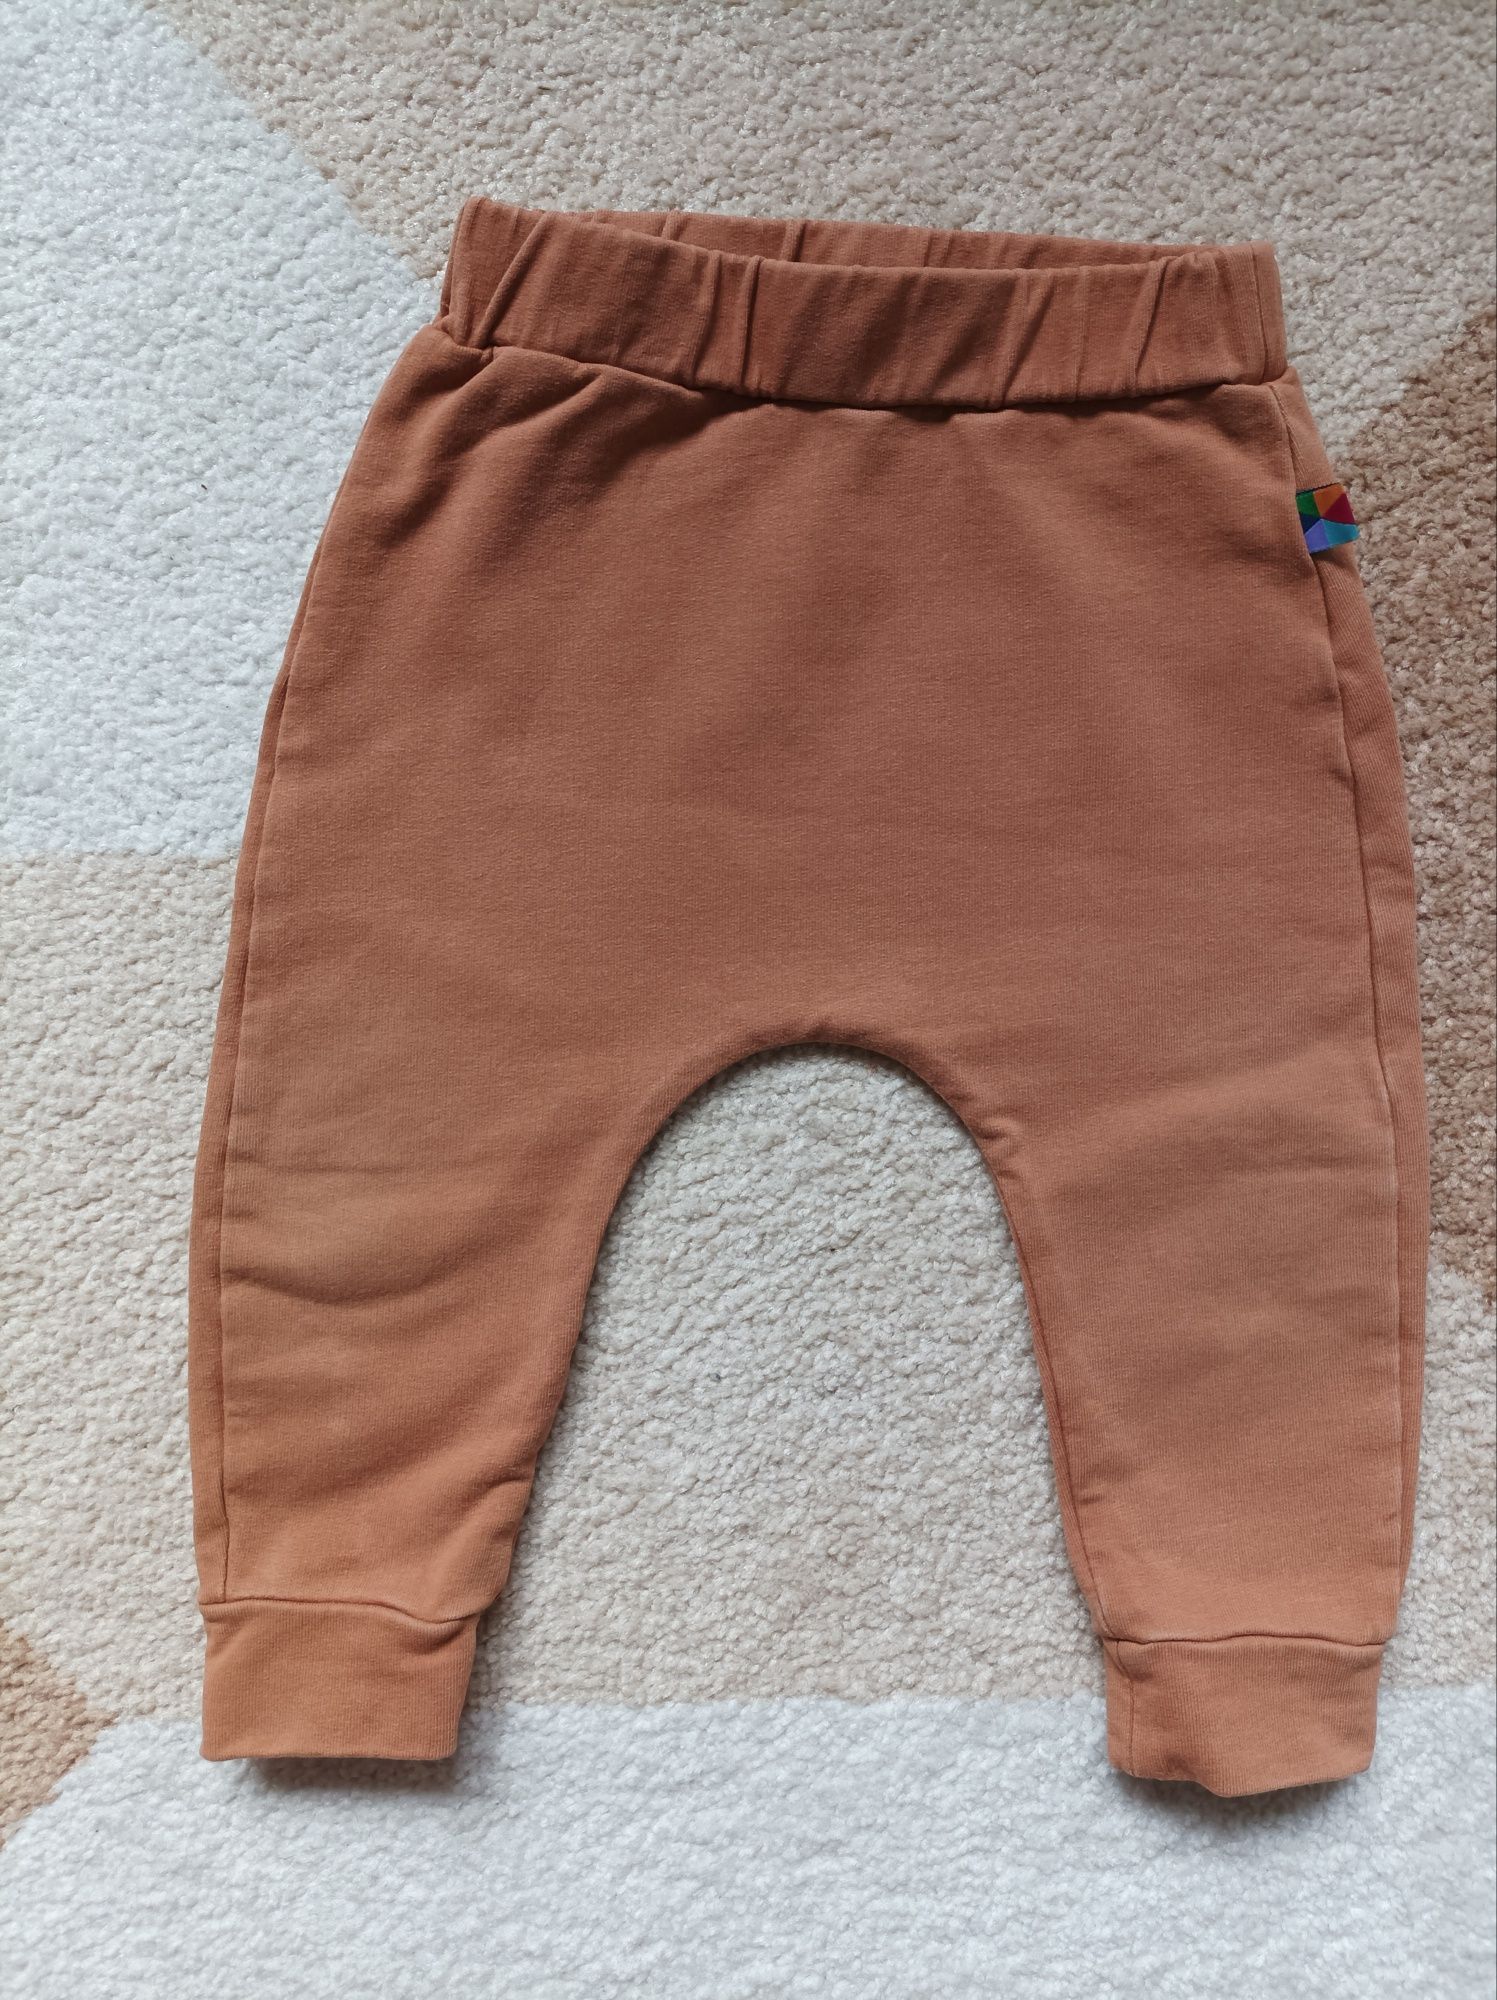 Spodnie dresowe dziecięce MyBasic 80 bordowe i karmelowe